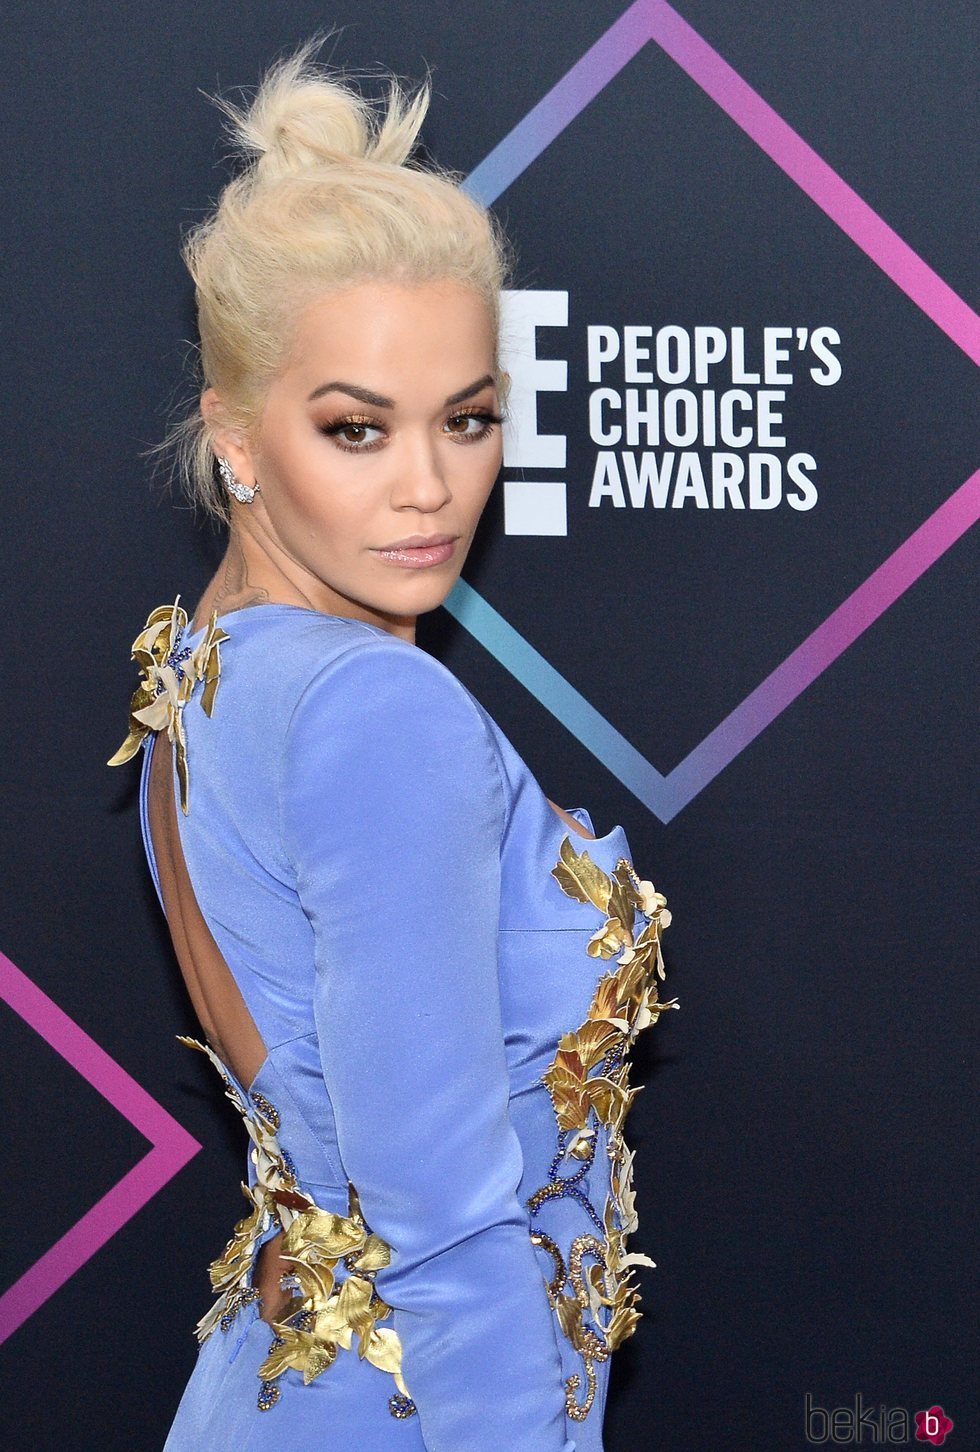 Rita Ora en la alfombra roja de los People's Choice Awards 2018